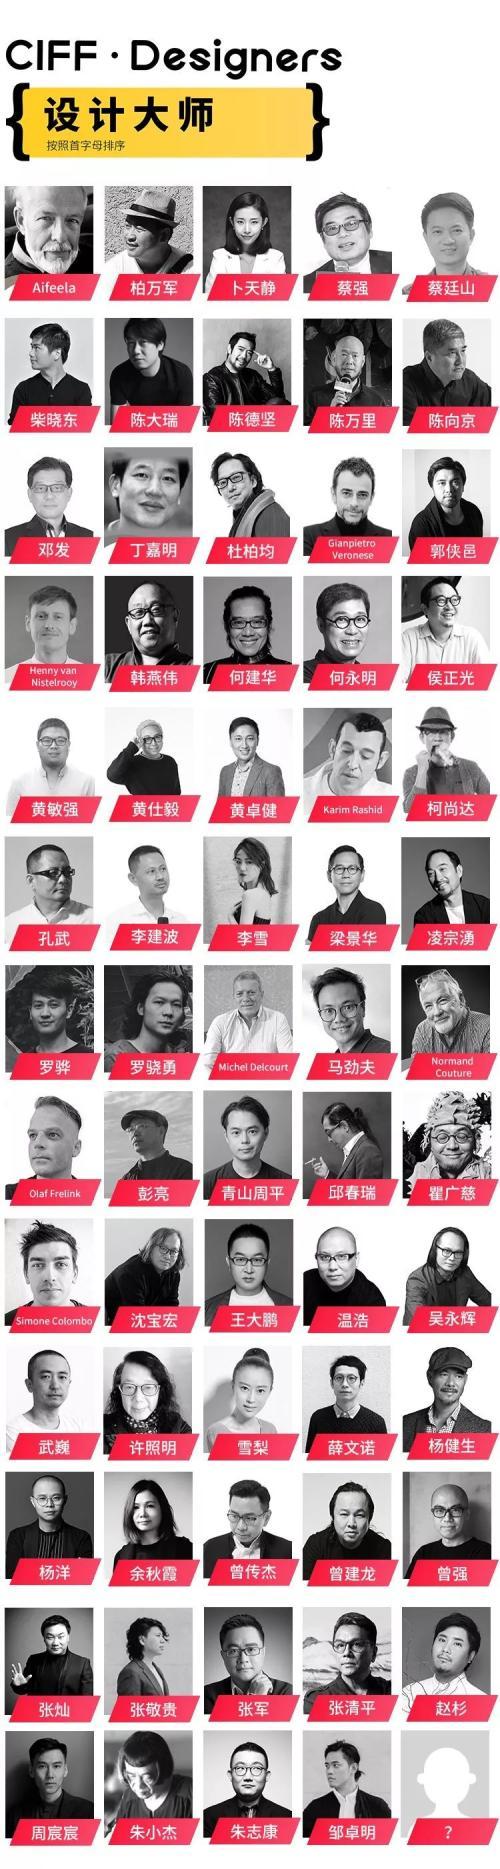 CIFF Guangzhou | 讓您的創想領先一整年的設計盛會